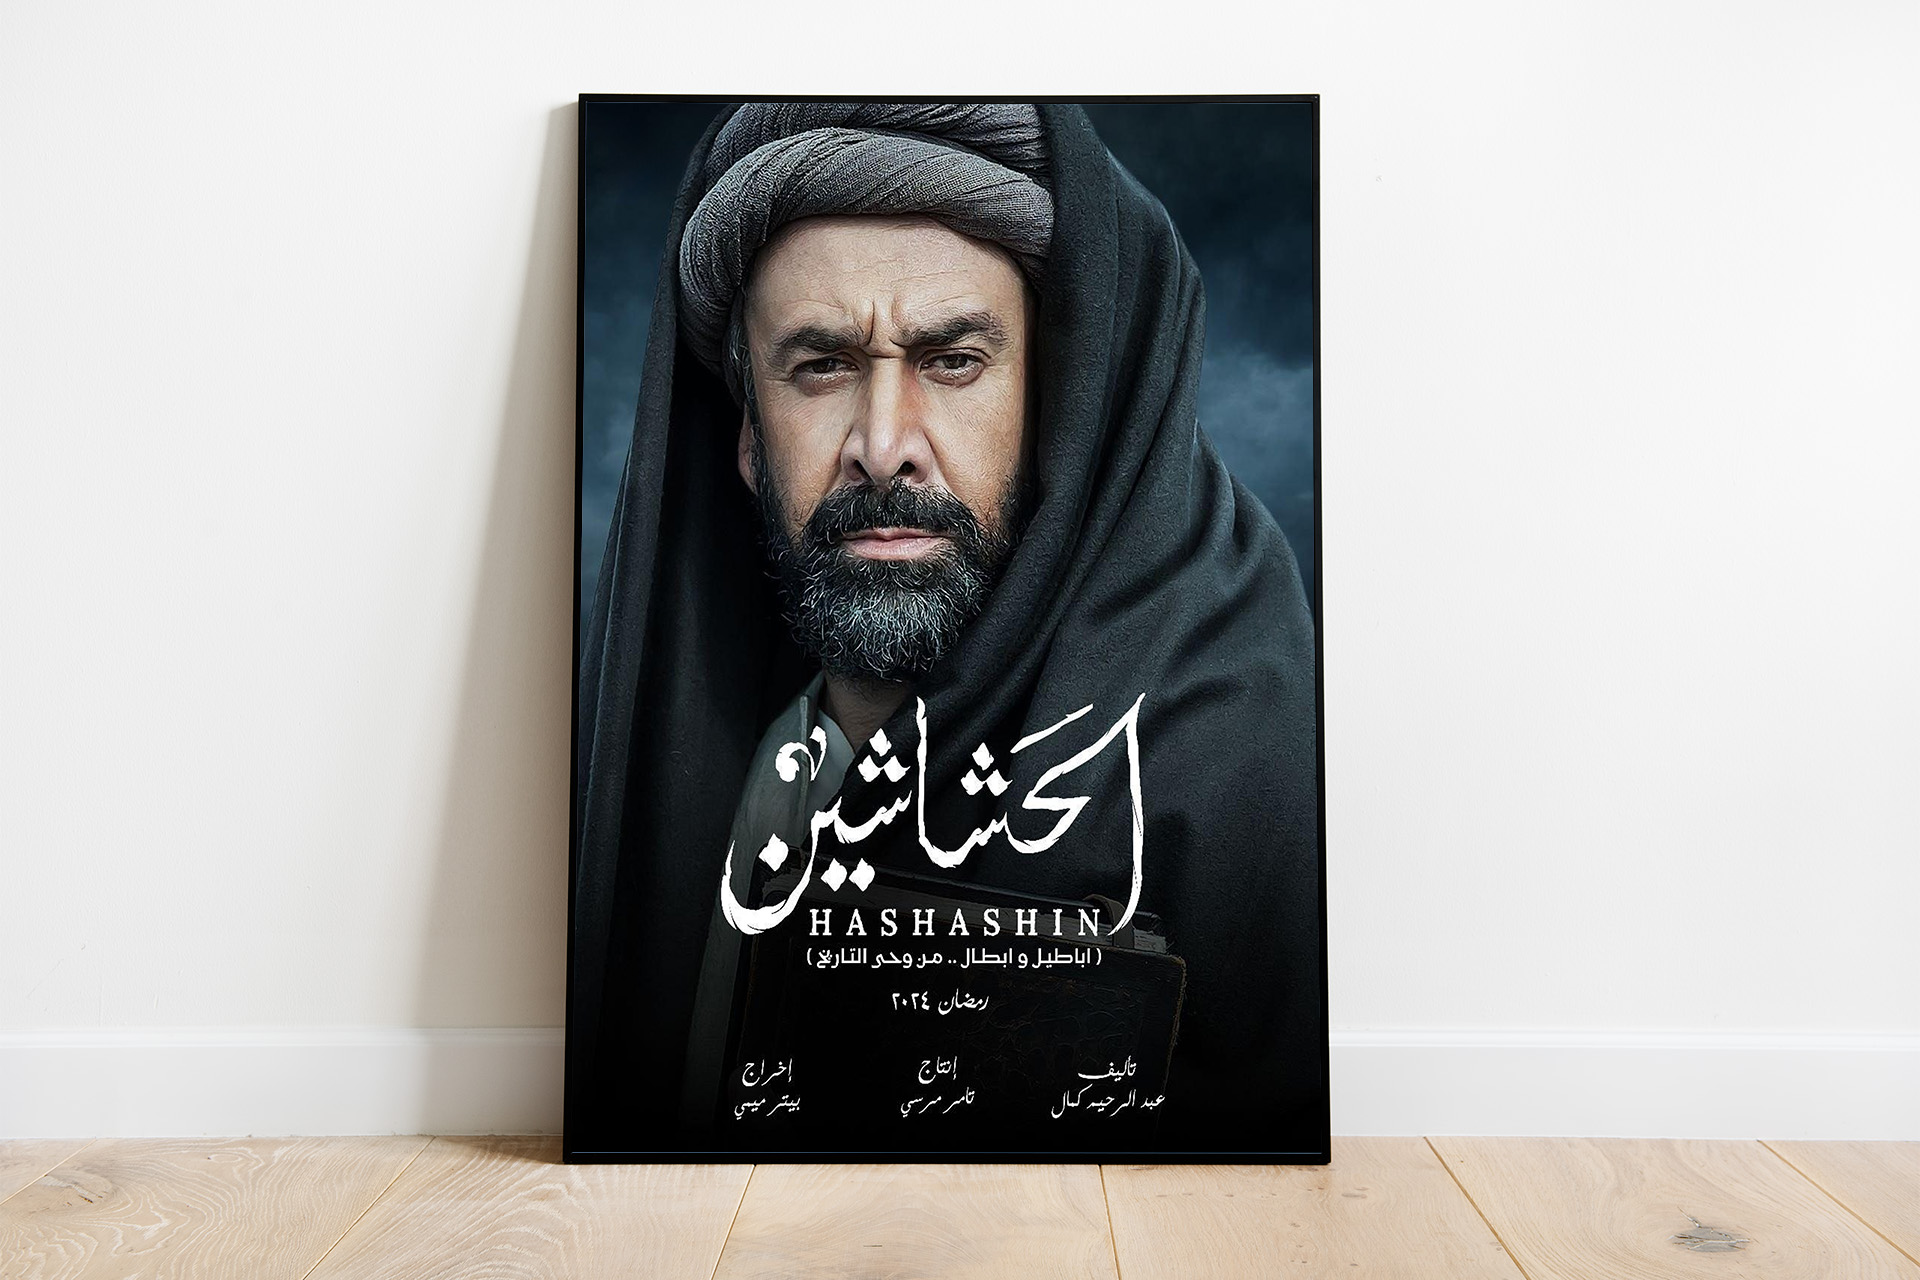 السلطات الإيرانية تحظر عرض مسلسل “الحشاشين” بعد ترجمته إلى الفارسية | فن – البوكس نيوز